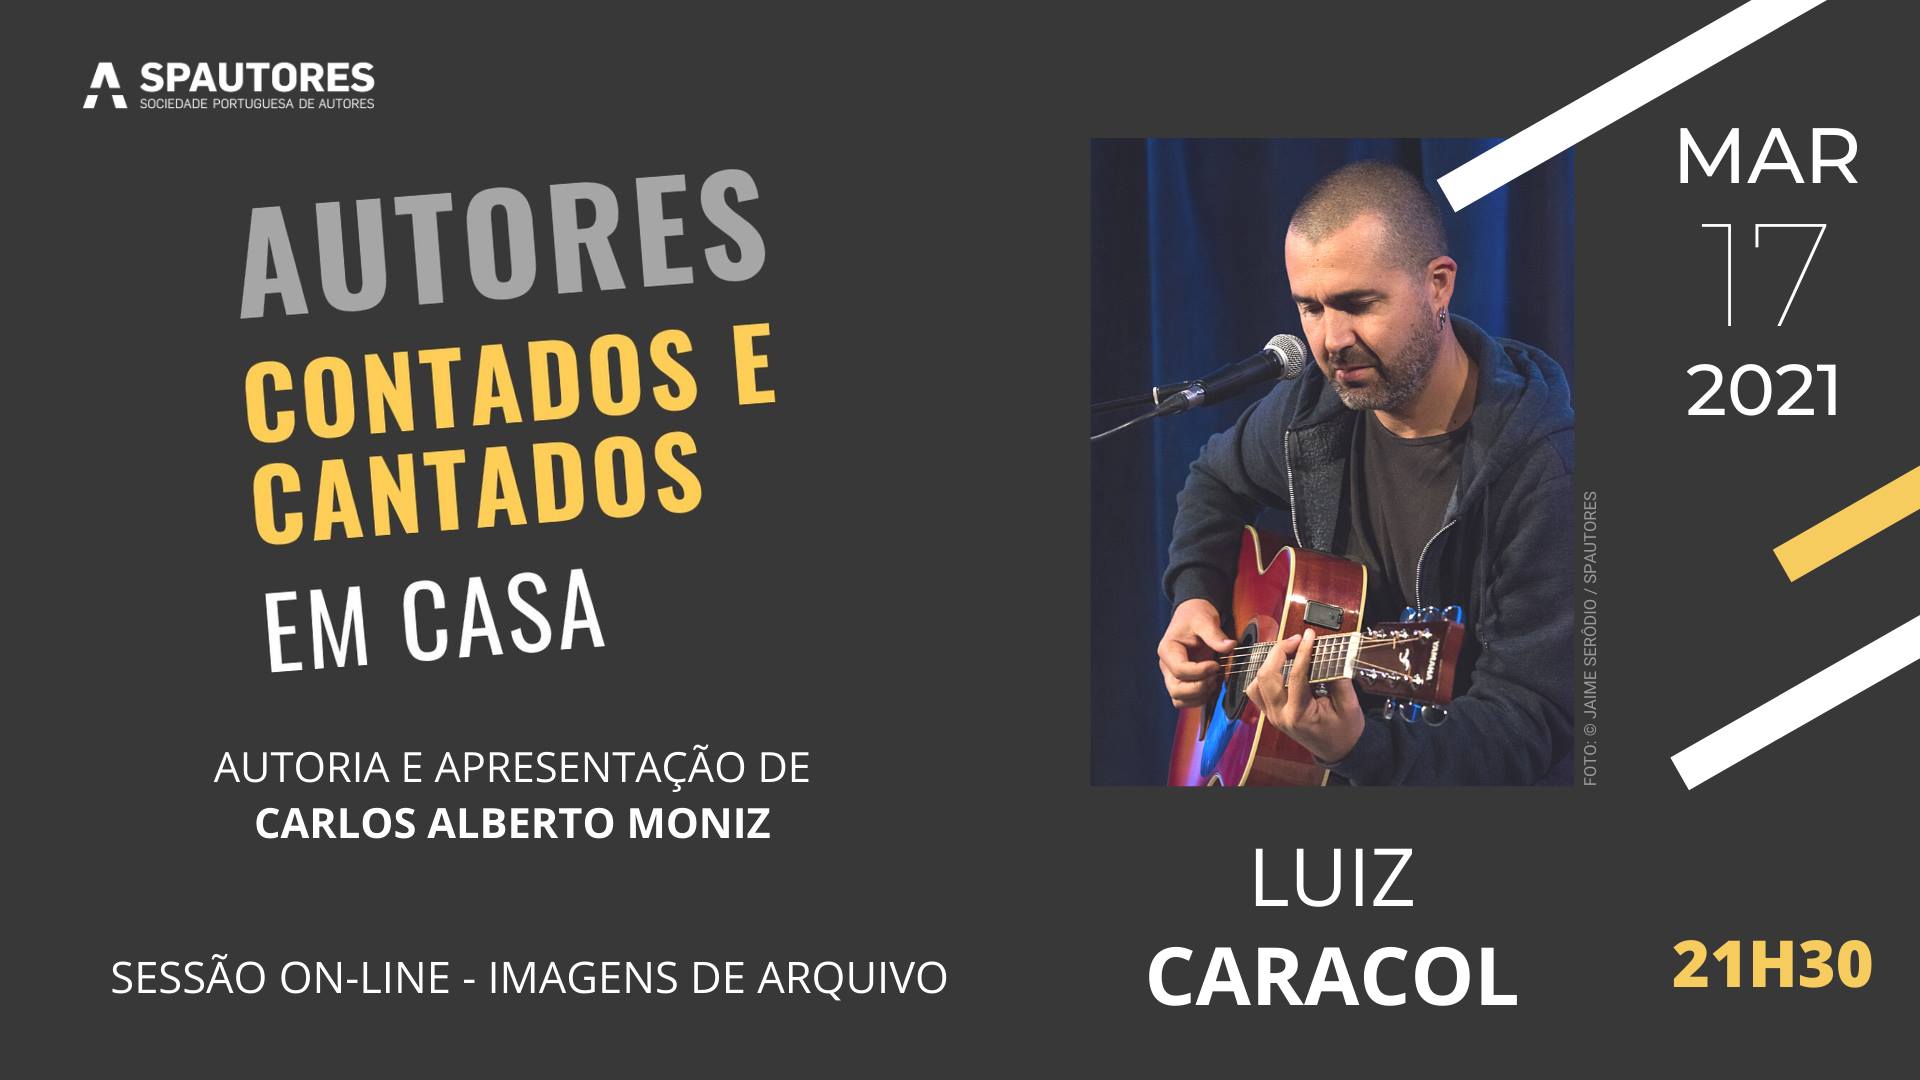 Luiz Caracol - Autores Contados e Cantados Em Casa